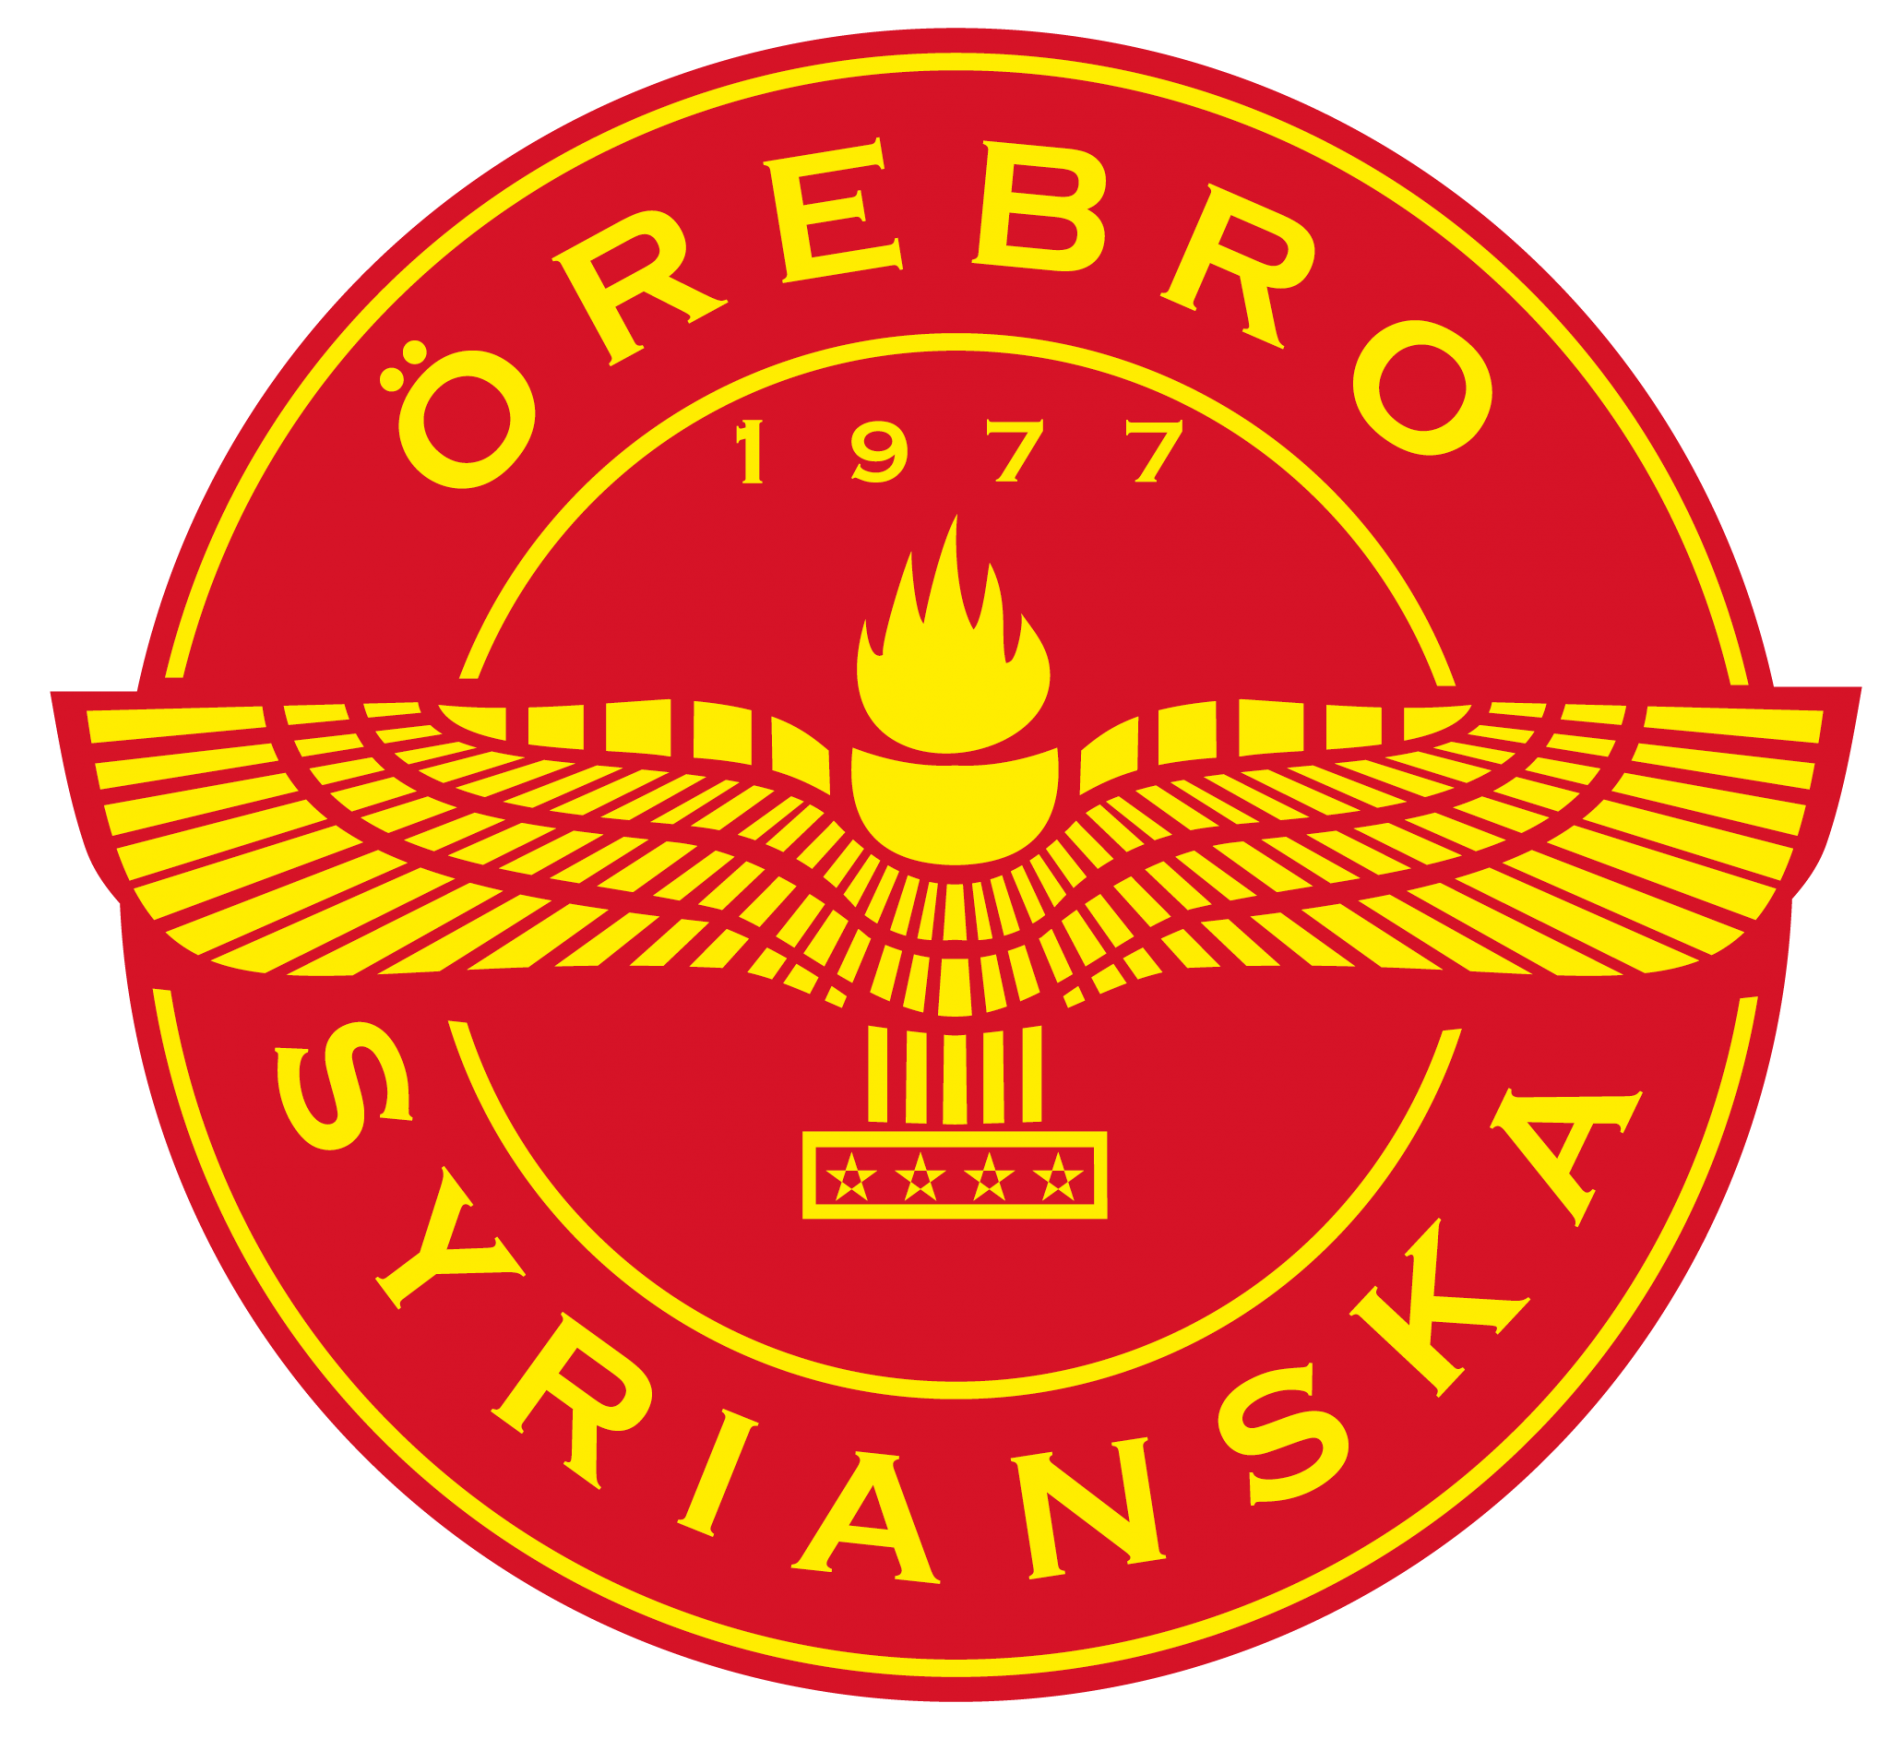 Örebro Syrianska Idrottsförening team logo